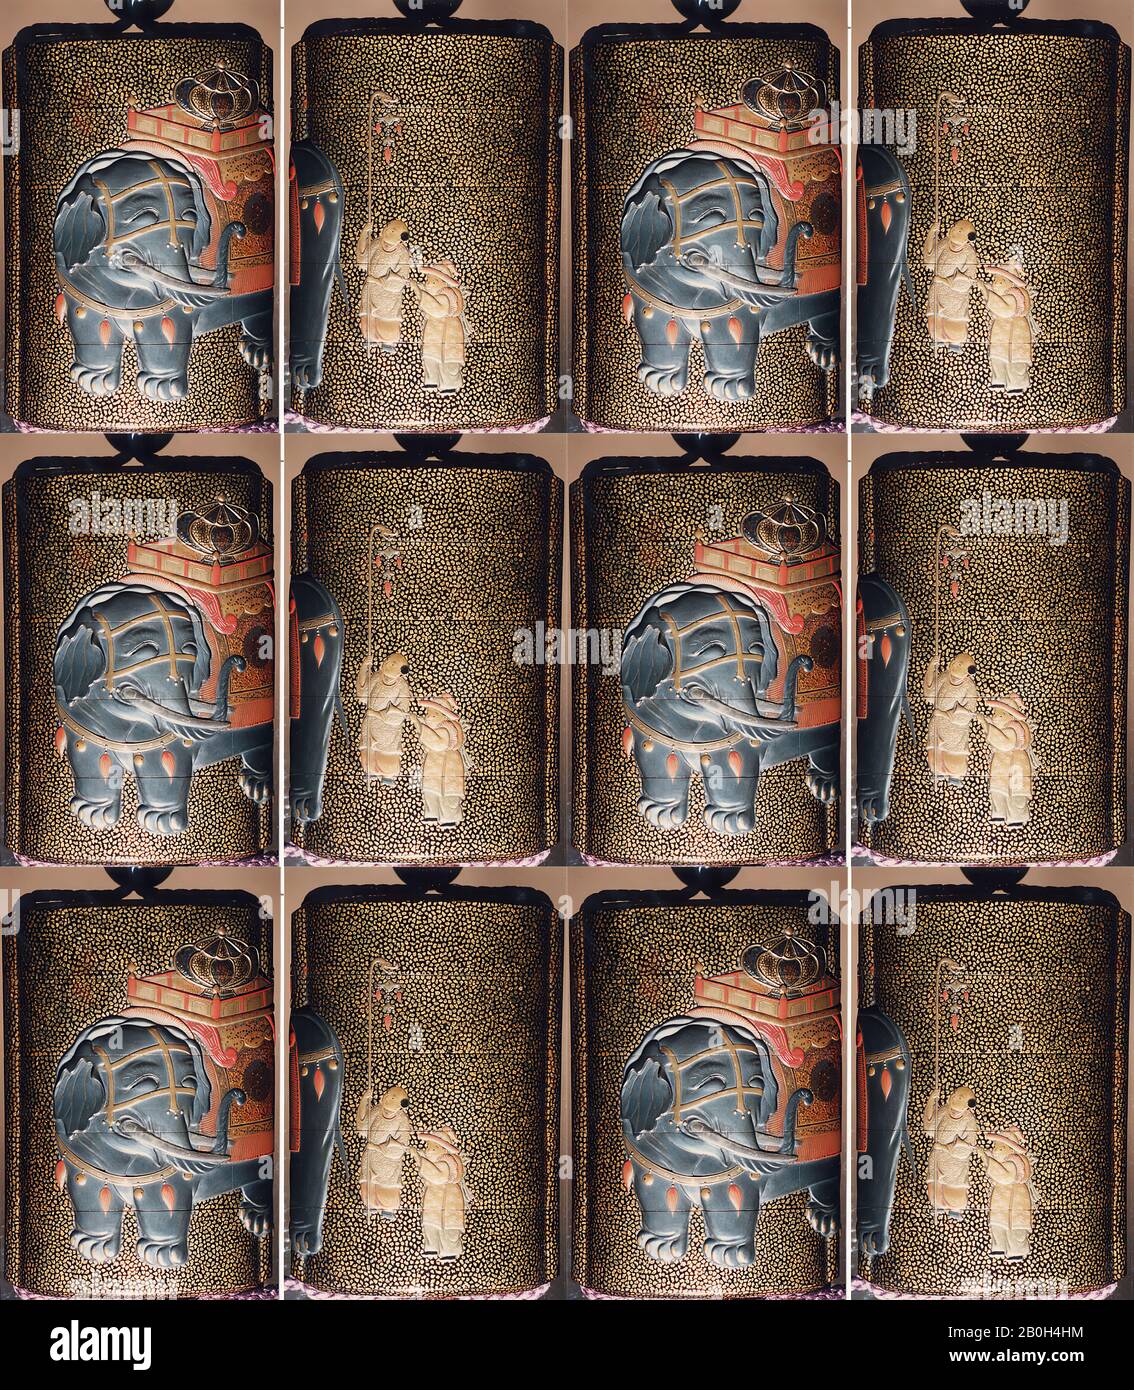 Cas (Inrō) avec conception de l'éléphant caporisé debout (obverse); Deux Karako avec Trumpet, bannière (inverse), Japon, XIXe siècle, Japon, Lacquer, roiro, hirame, or, argent et hiramakie colorée, takamakie; intérieur: Nashiji et fundame; chaque cas: Boîte en métal argenté, 3 11/16 x 9/16 x 1 (9,4 x 6,5 x 2,8 cm), Inrō Banque D'Images